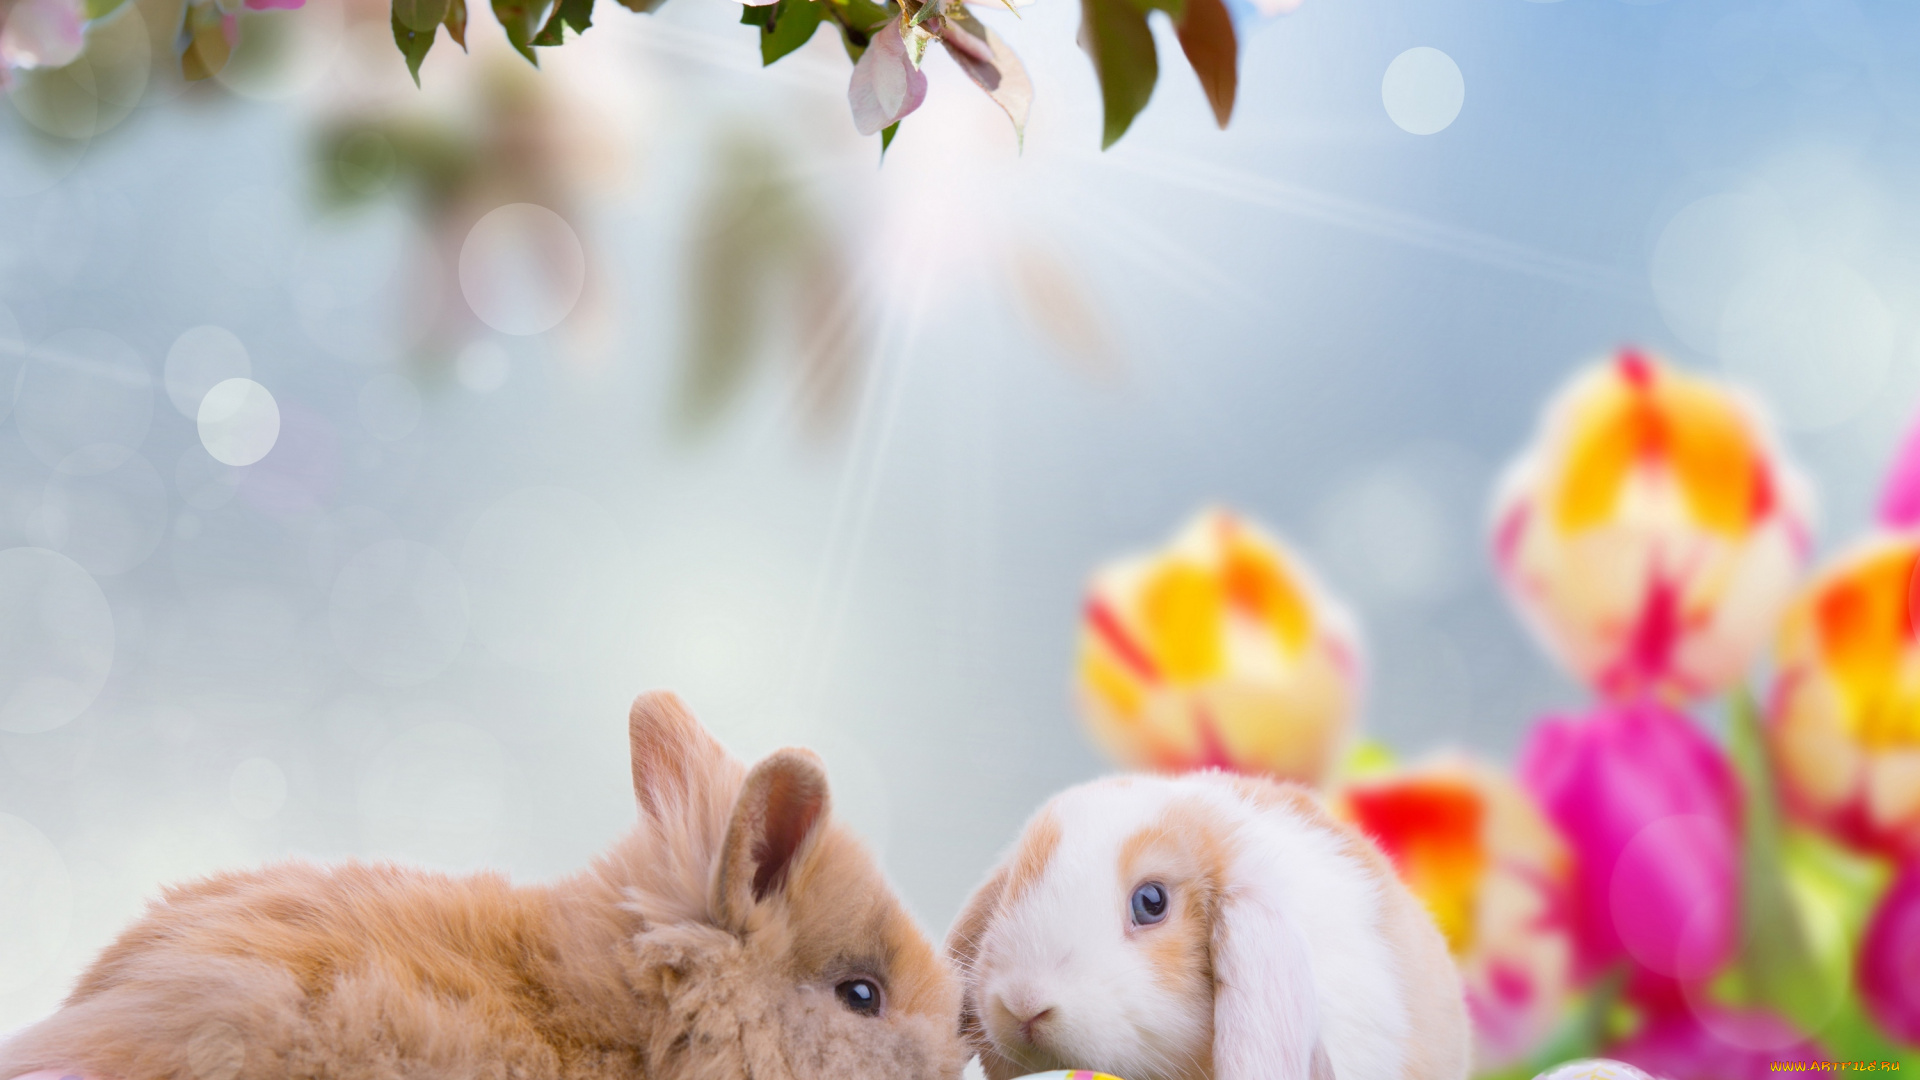 животные, кролики, , зайцы, доски, природа, весна, easter, облака, небо, пасха, праздник, тележка, нарциссы, цветы